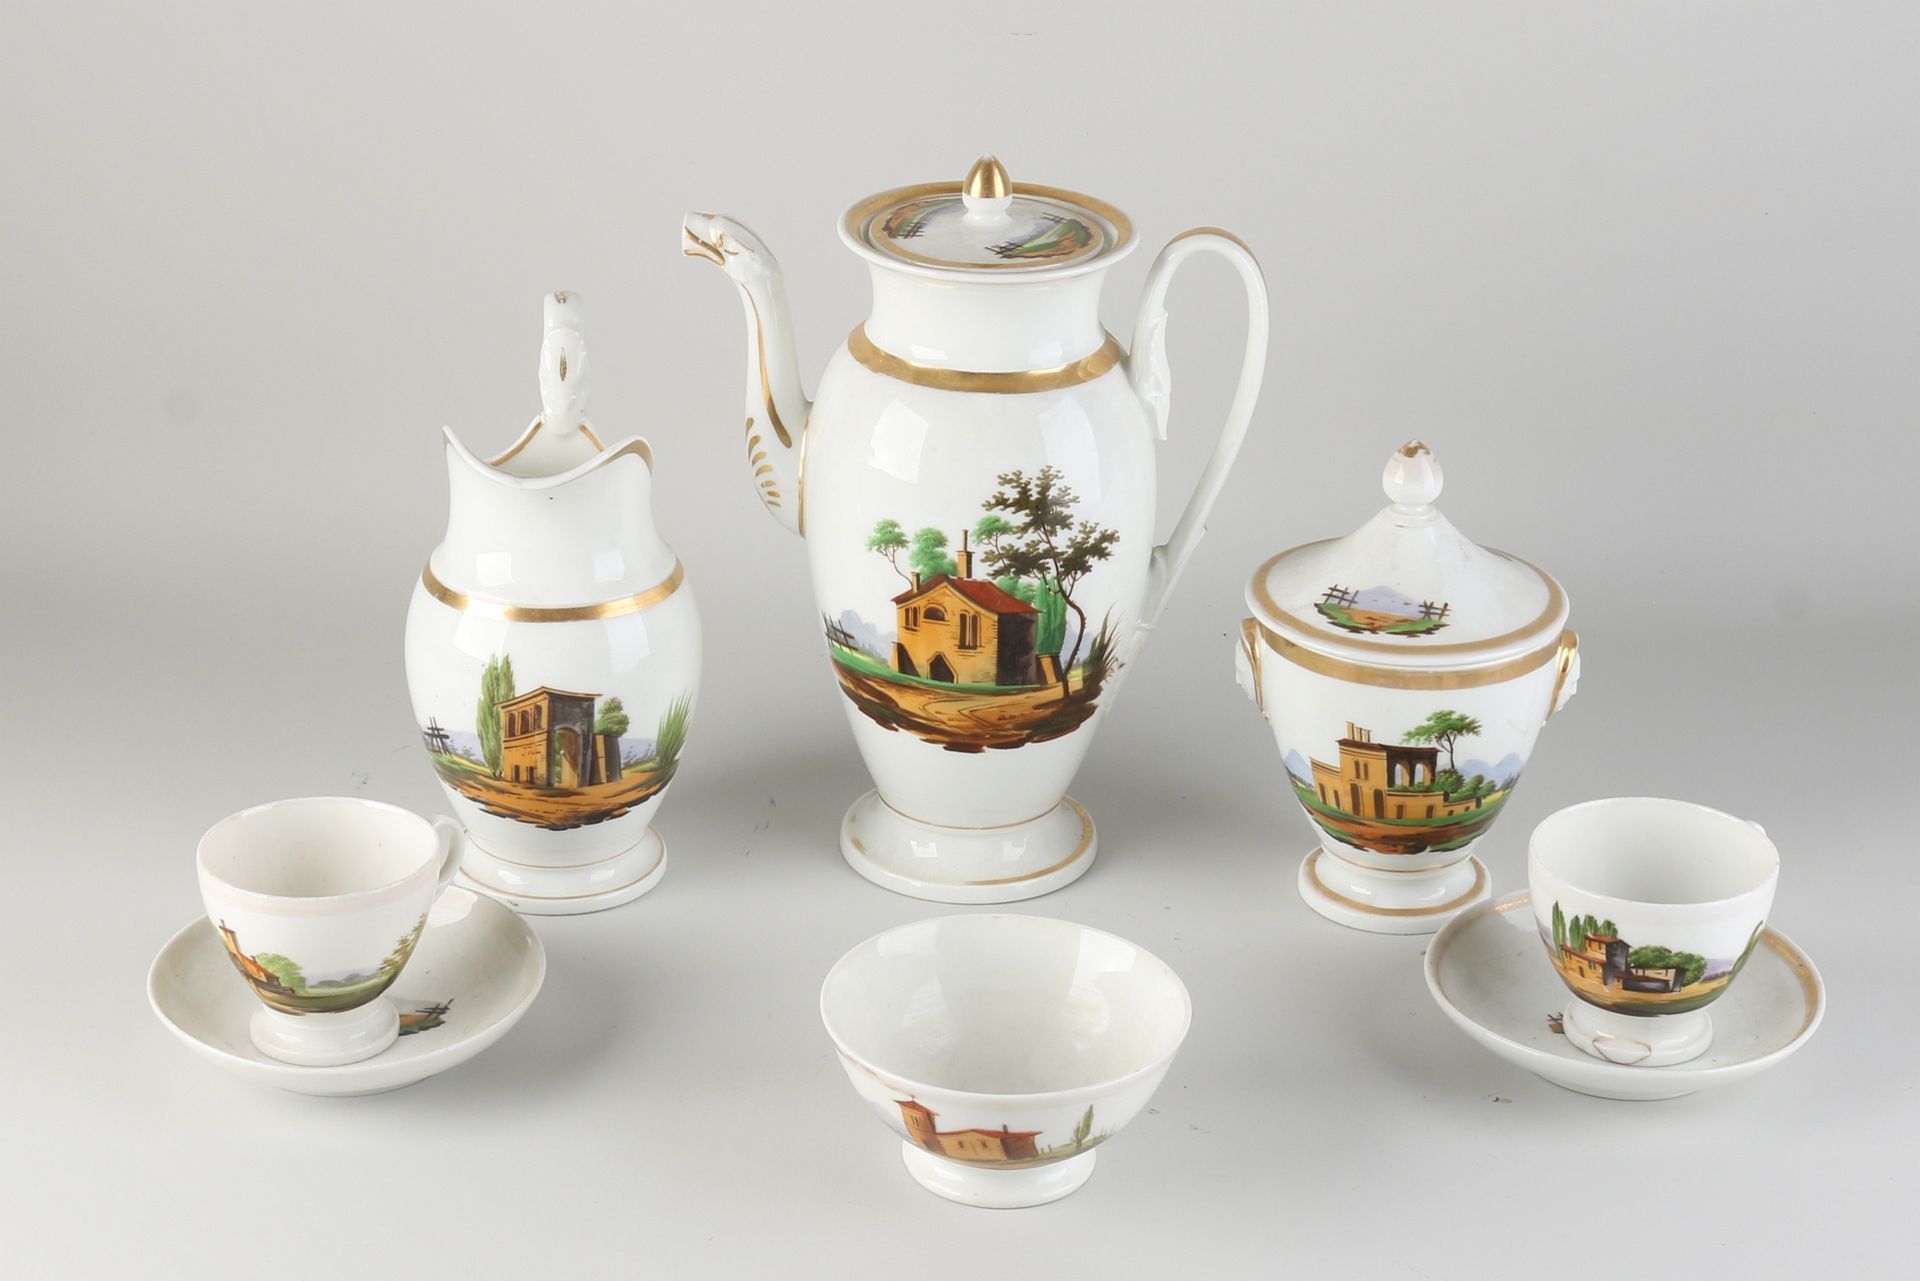 Six-piece French tea set